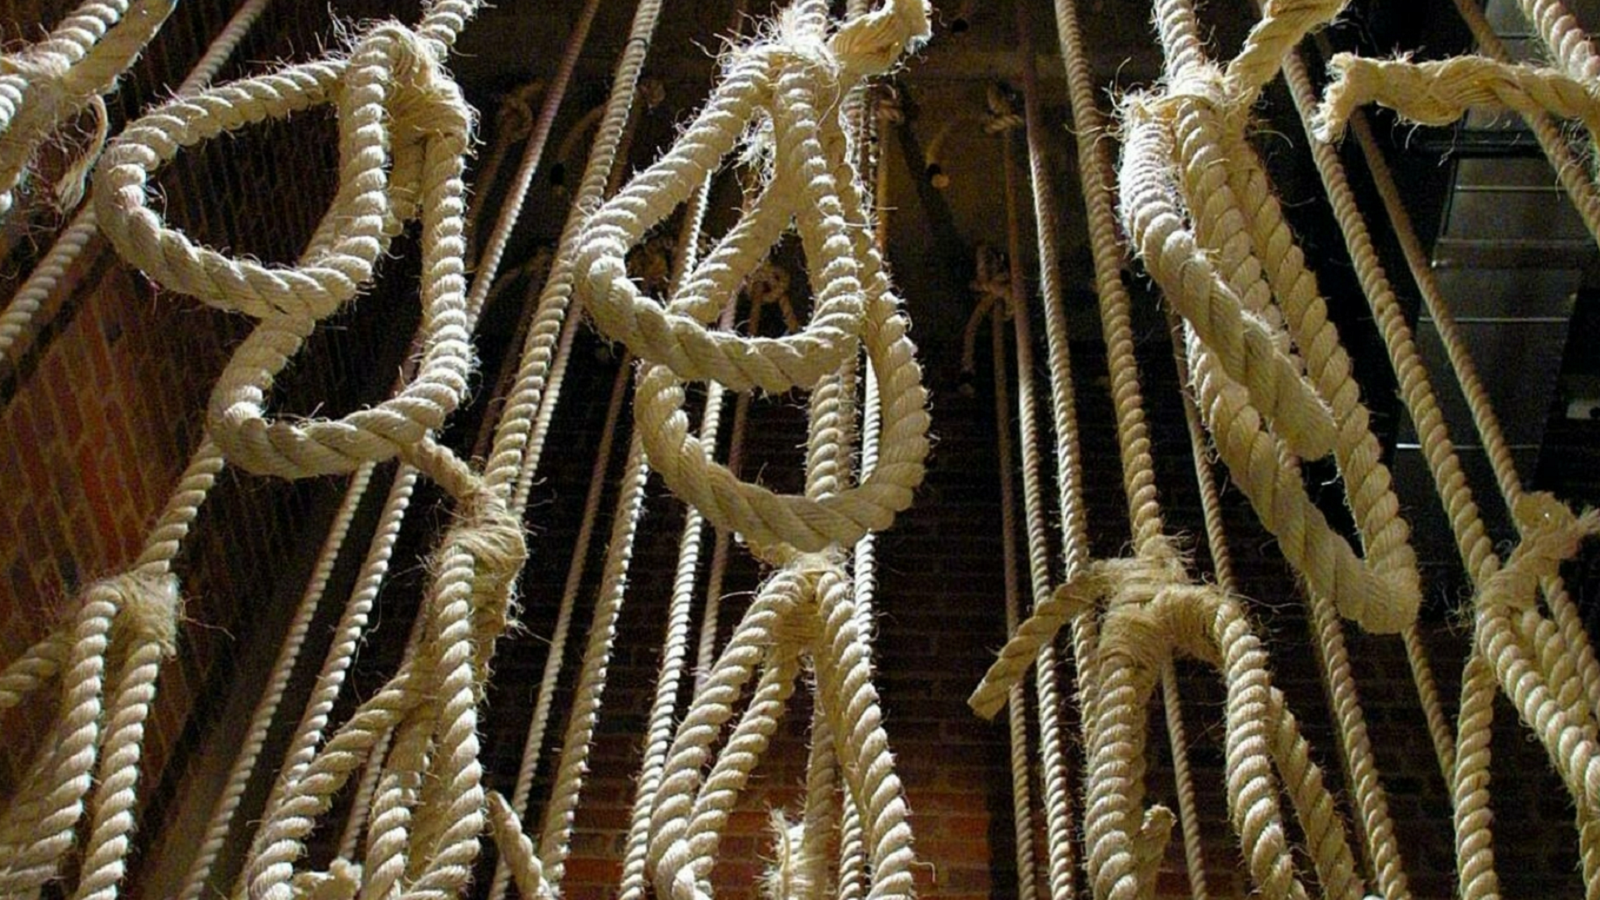 إعدام 86 شخصاً في إيران خلال كانون الثاني